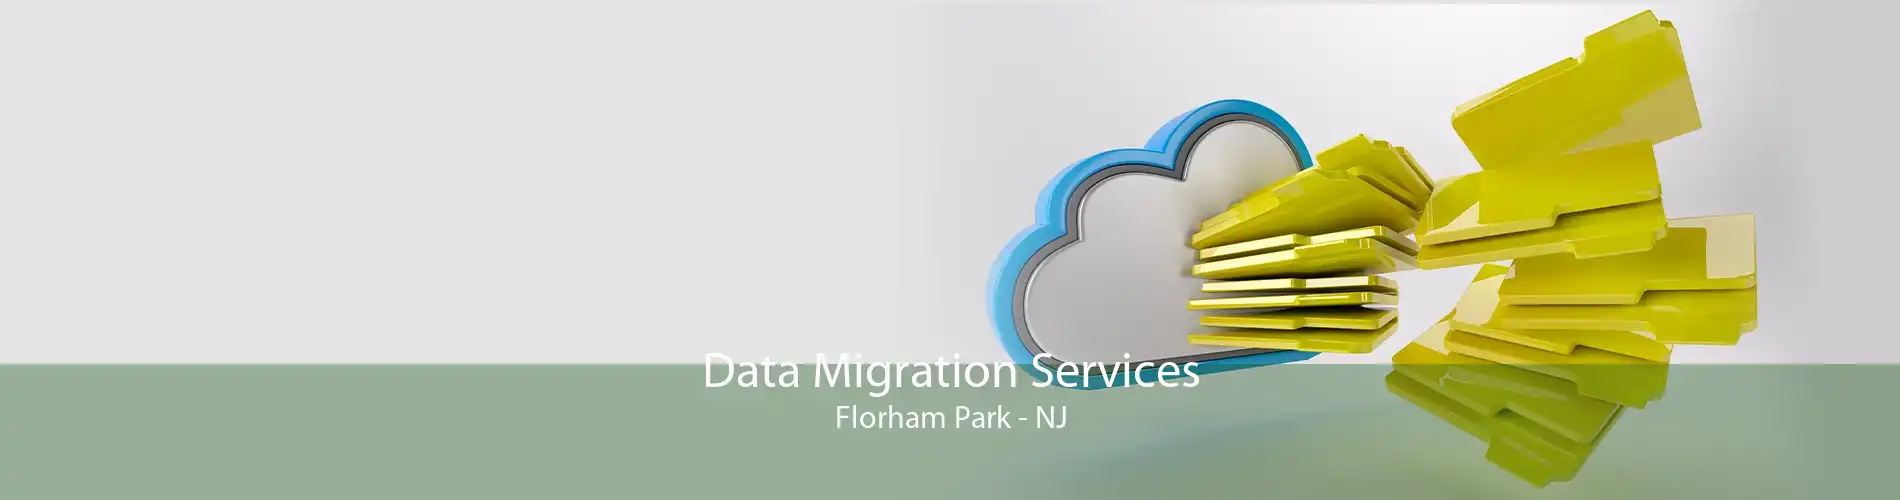 Data Migration Services Florham Park - NJ